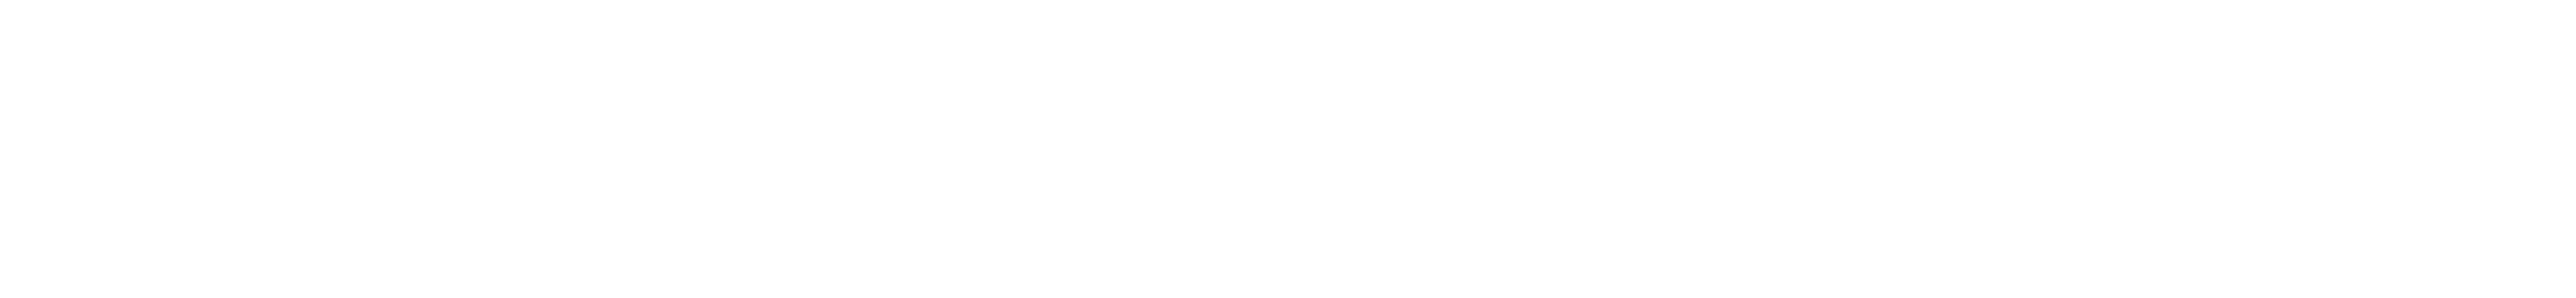 Logo Token City invertido